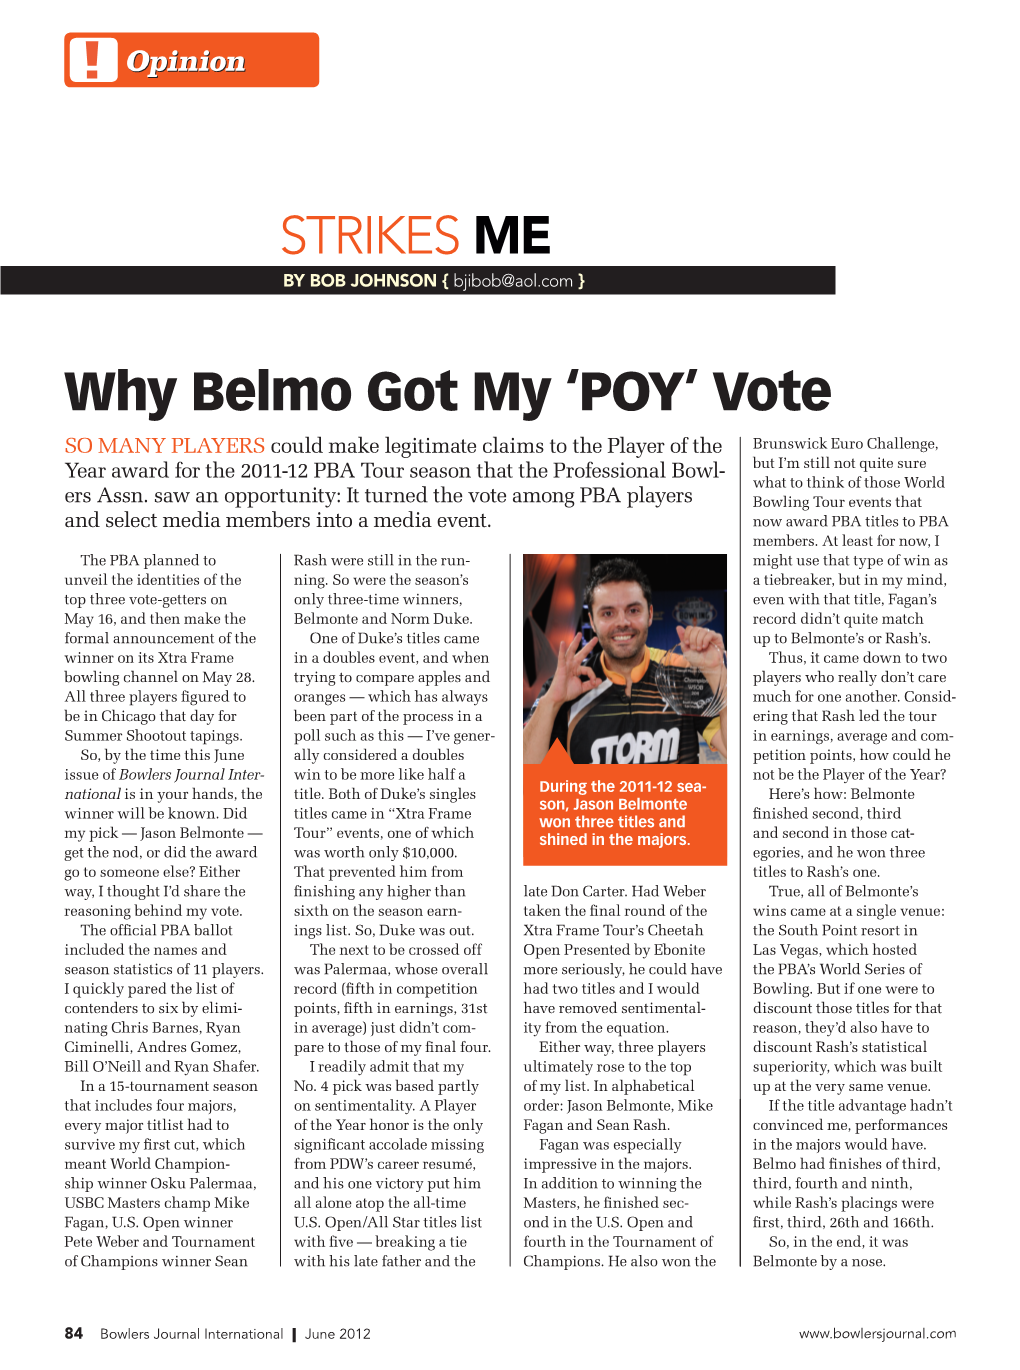 Why Belmo Got My 'POY' Vote Strikes Me